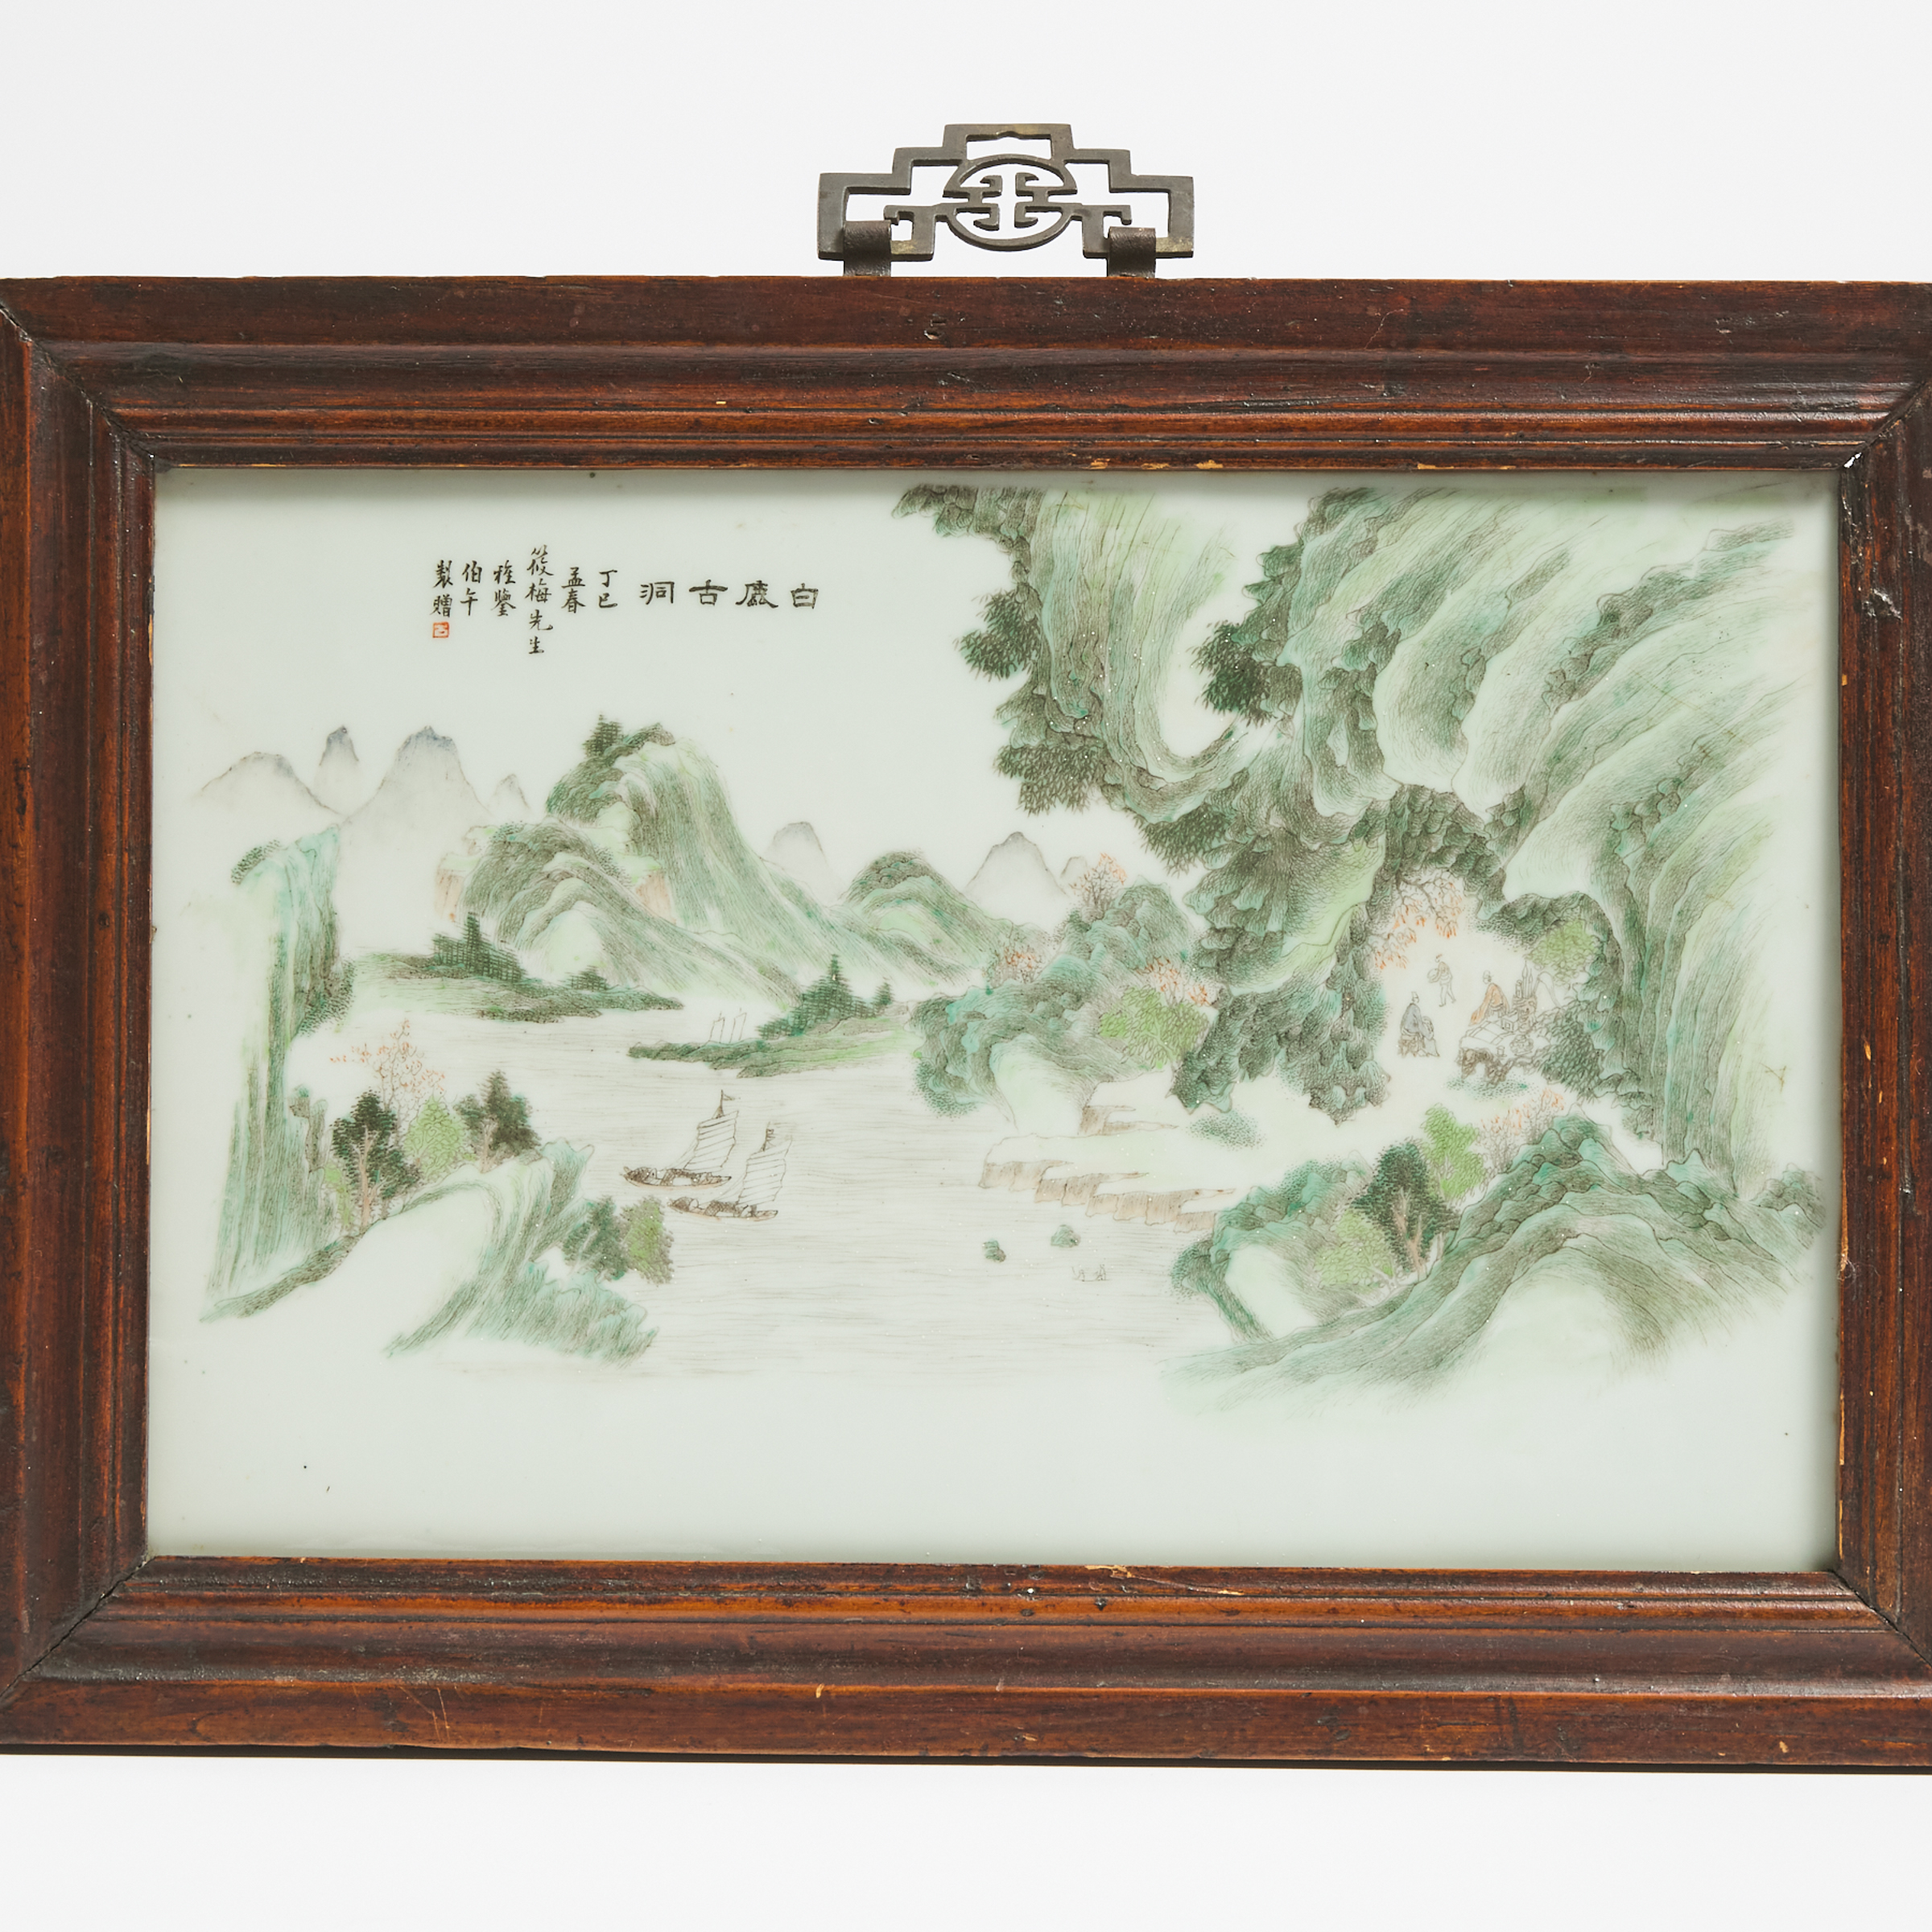 An Enameled Porcelain 'Landscape' Panel, Dated 1917